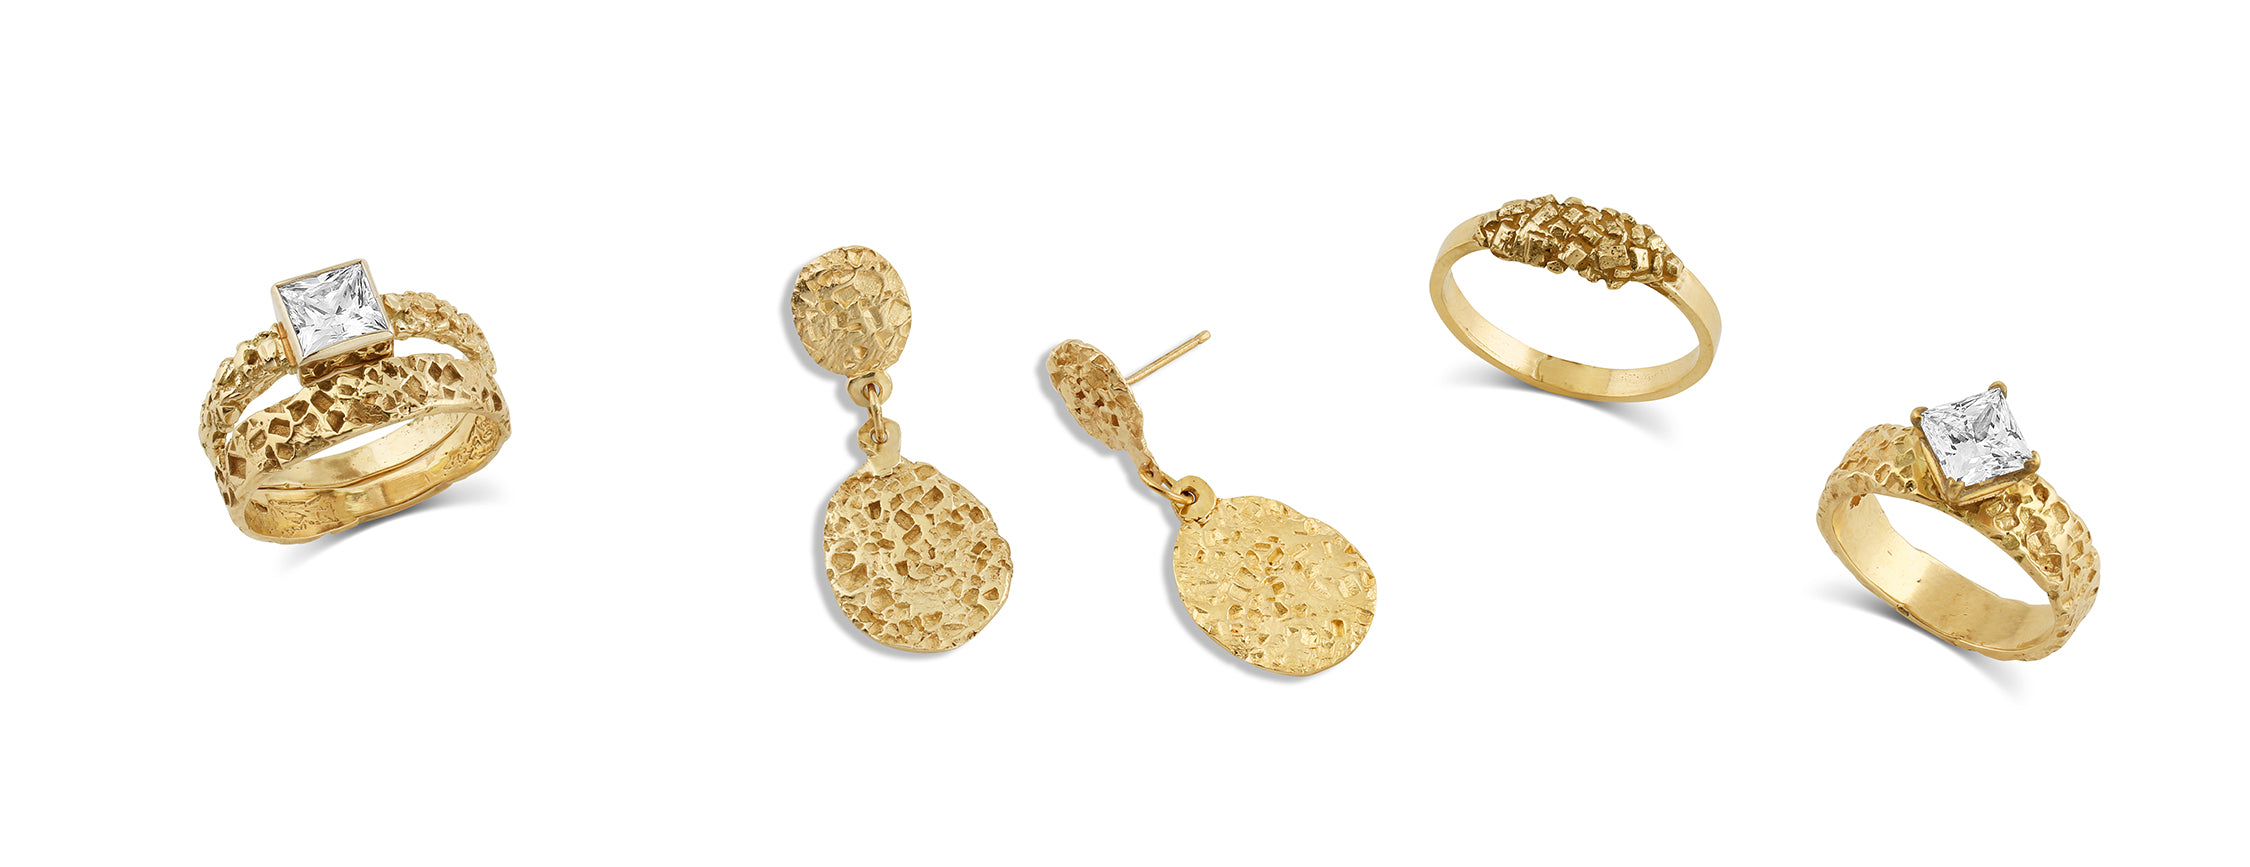 Sweet Love Earrings in 14K Gold